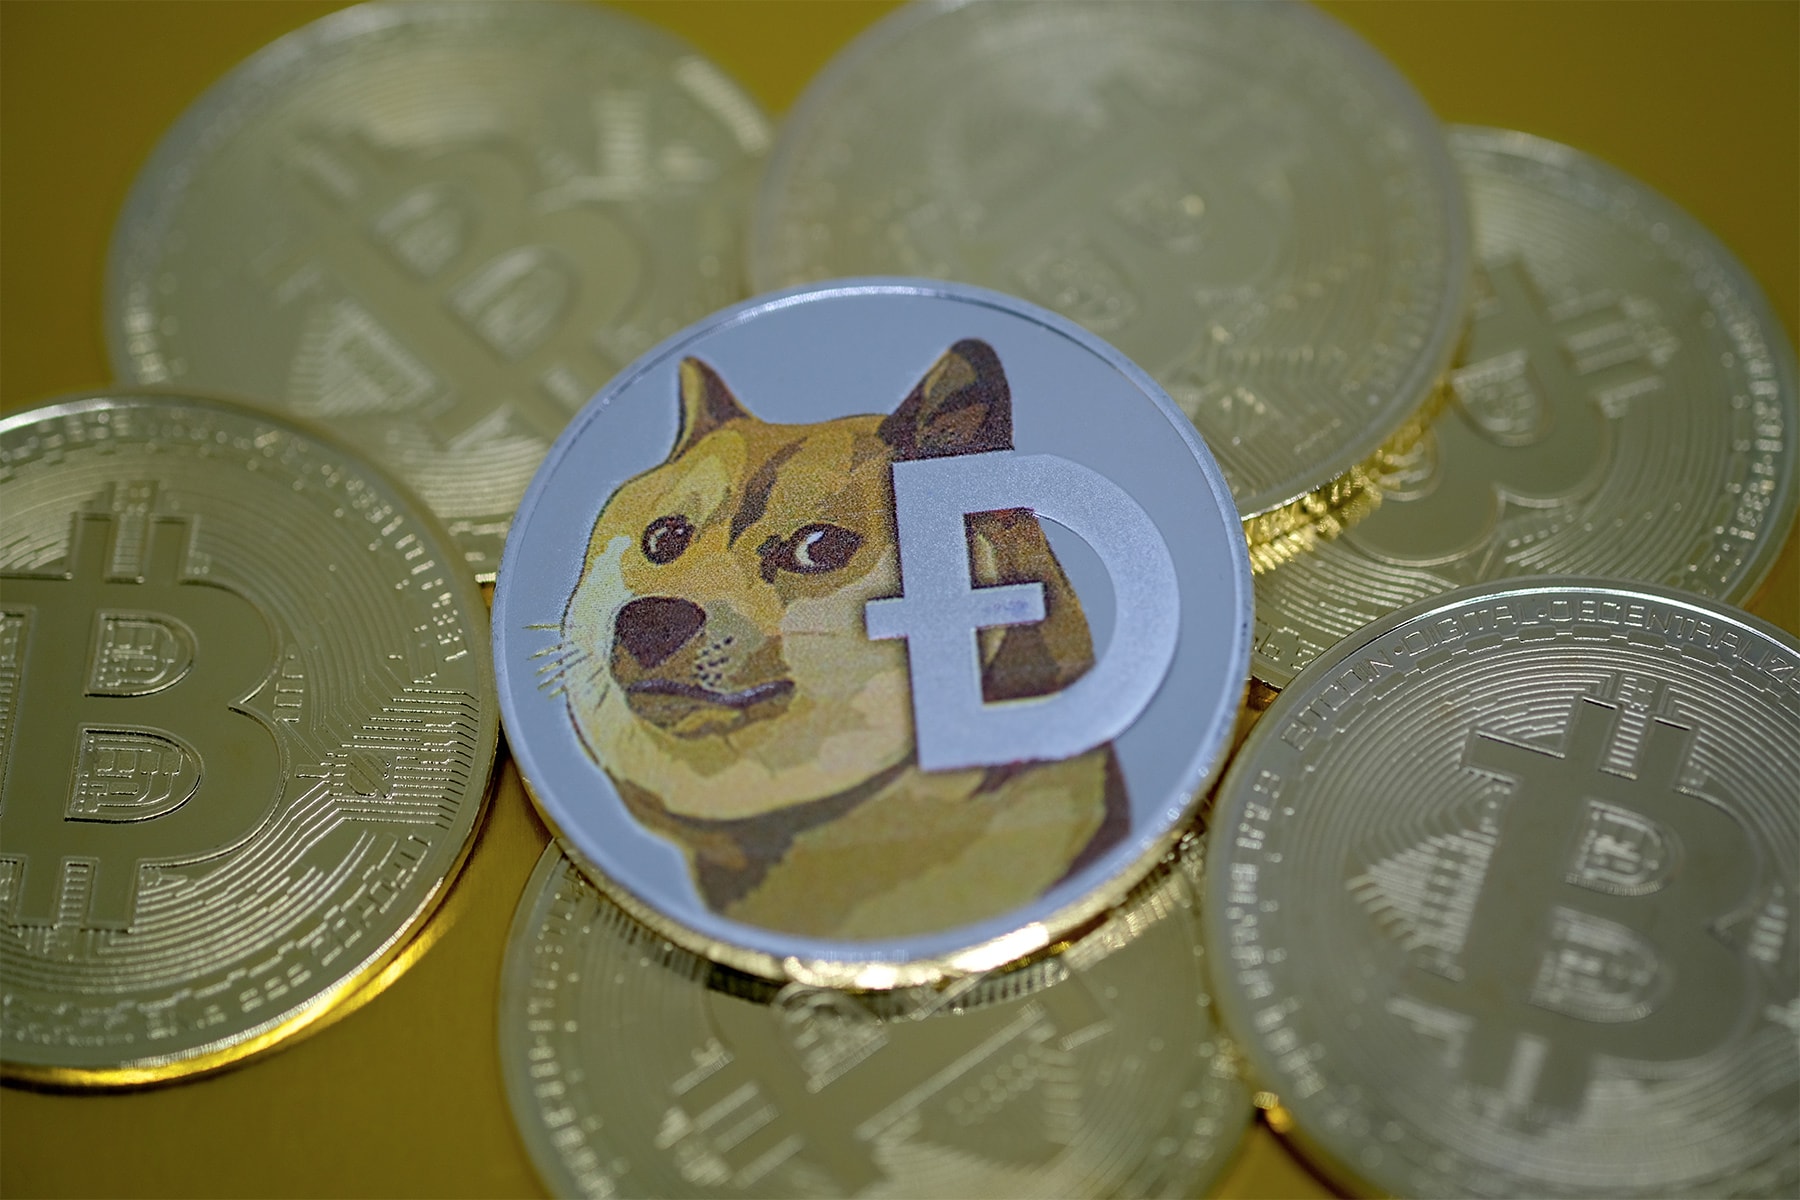 虛擬加密貨幣 Dogecoin 價值大幅成長 800%